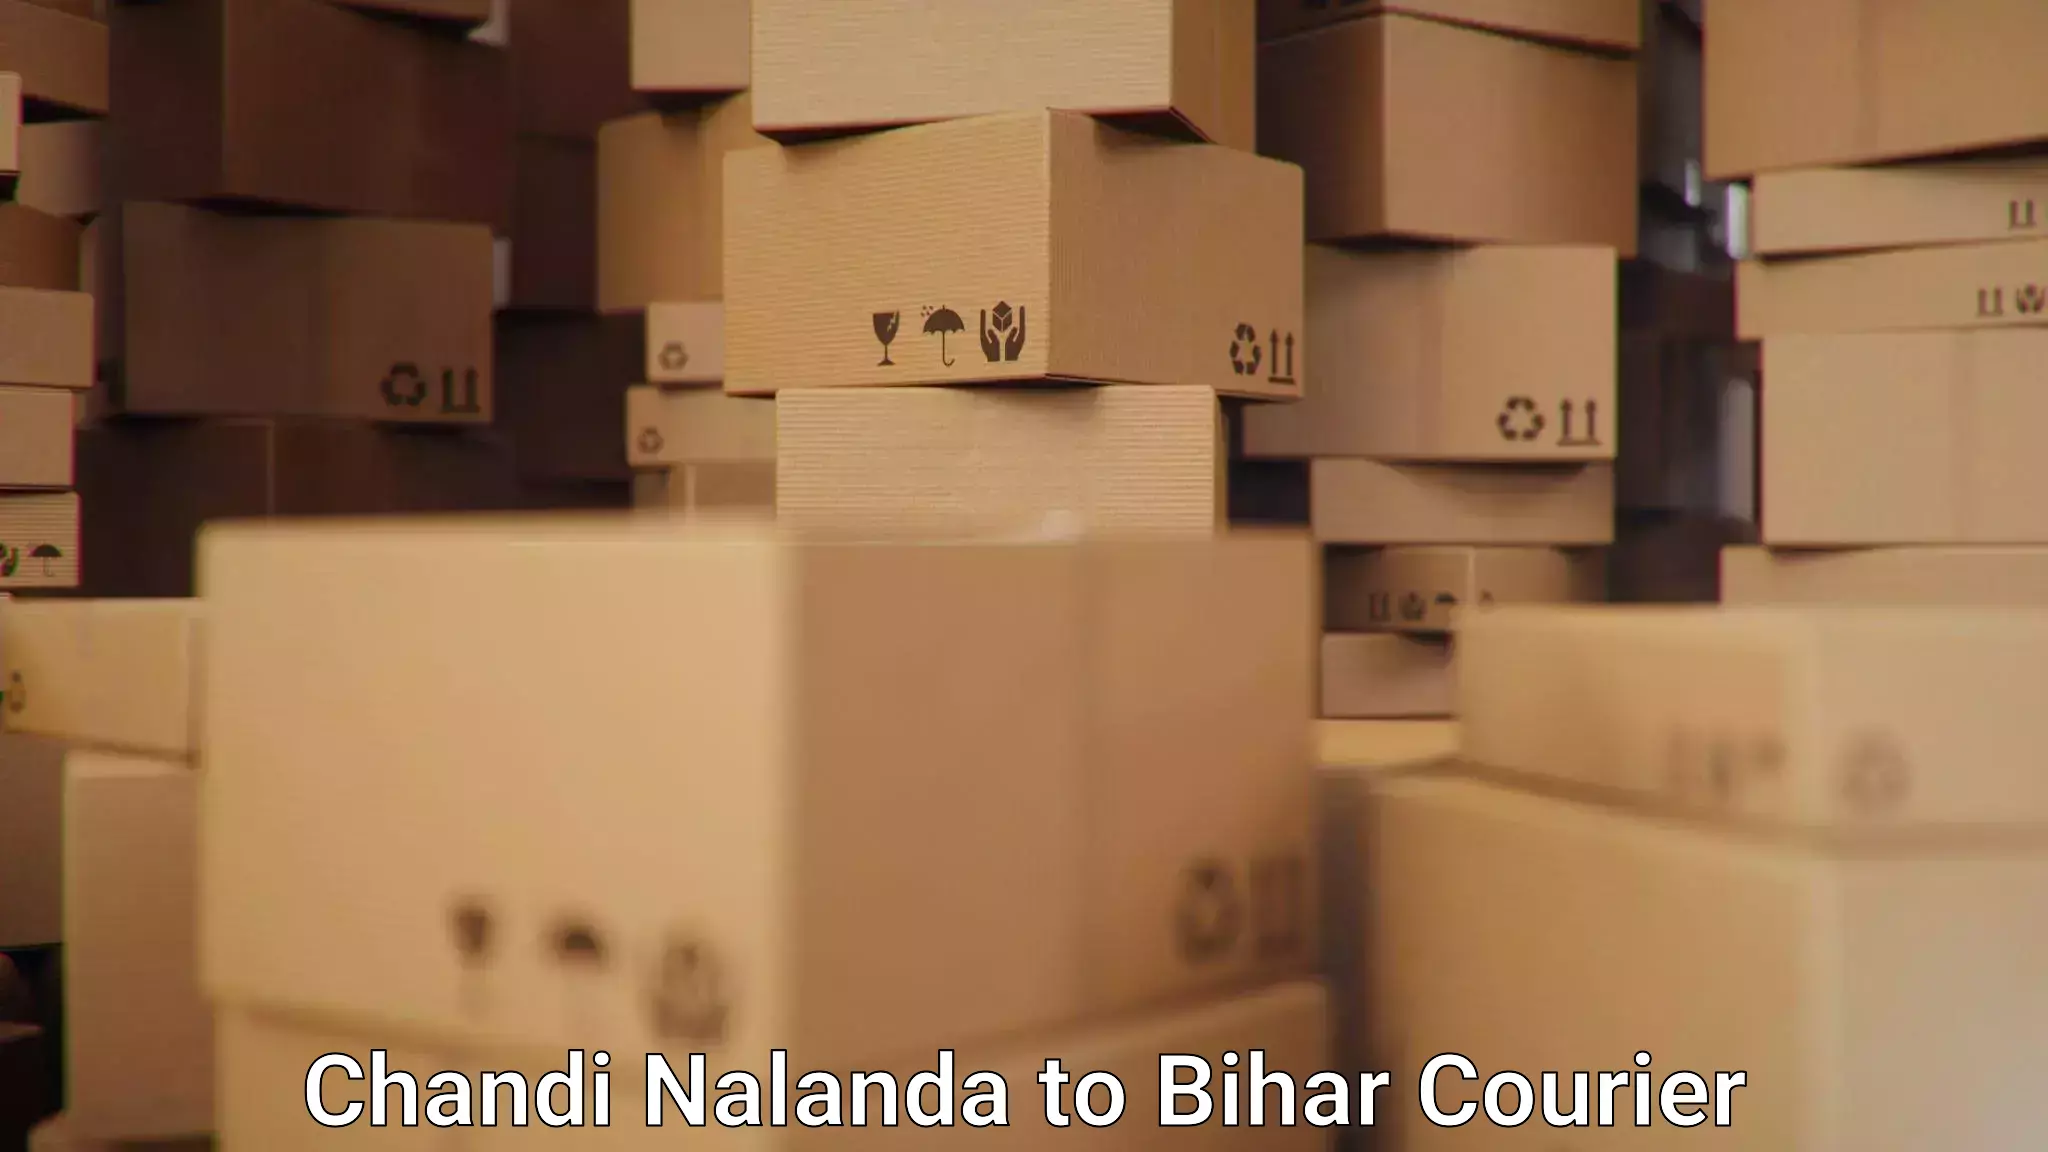 Digital shipping tools in Chandi Nalanda to Kochas